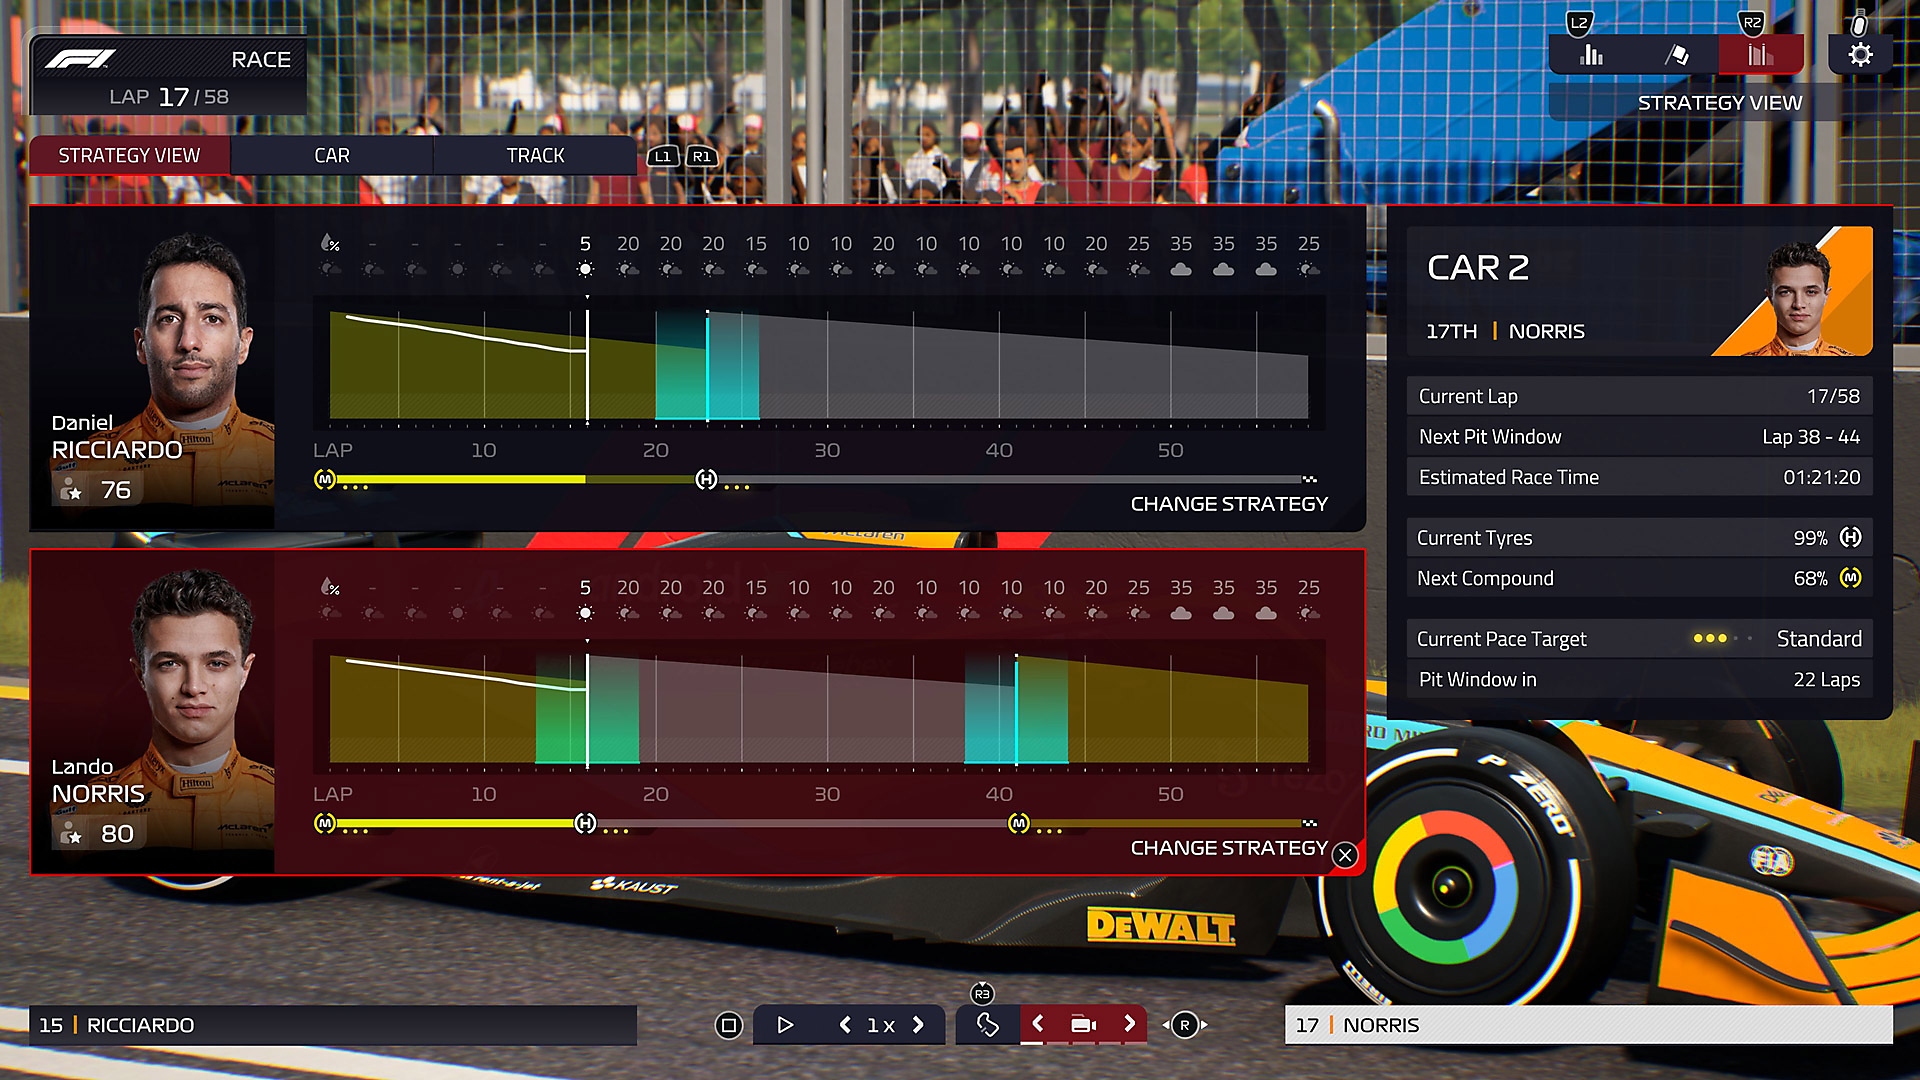 F1 Manager 2022 - Capture d'écran de l'interface de comparaison de deux pilotes